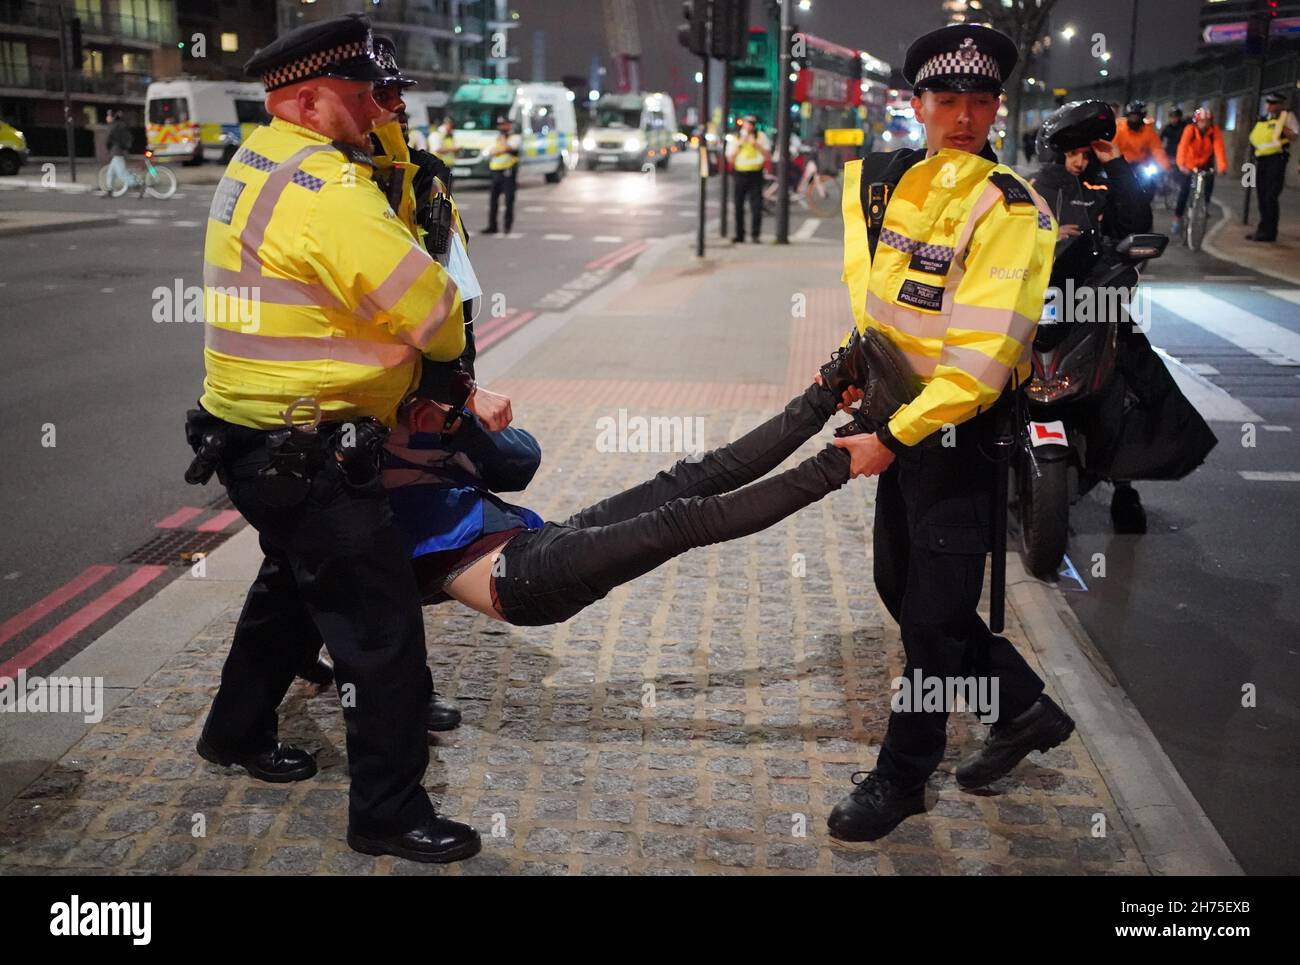 La police défait un activiste du climat d'Isolate Britain qui participe à une manifestation sur le pont Vauxhall dans le centre de Londres.Date de la photo: Samedi 20 novembre 2021. Banque D'Images